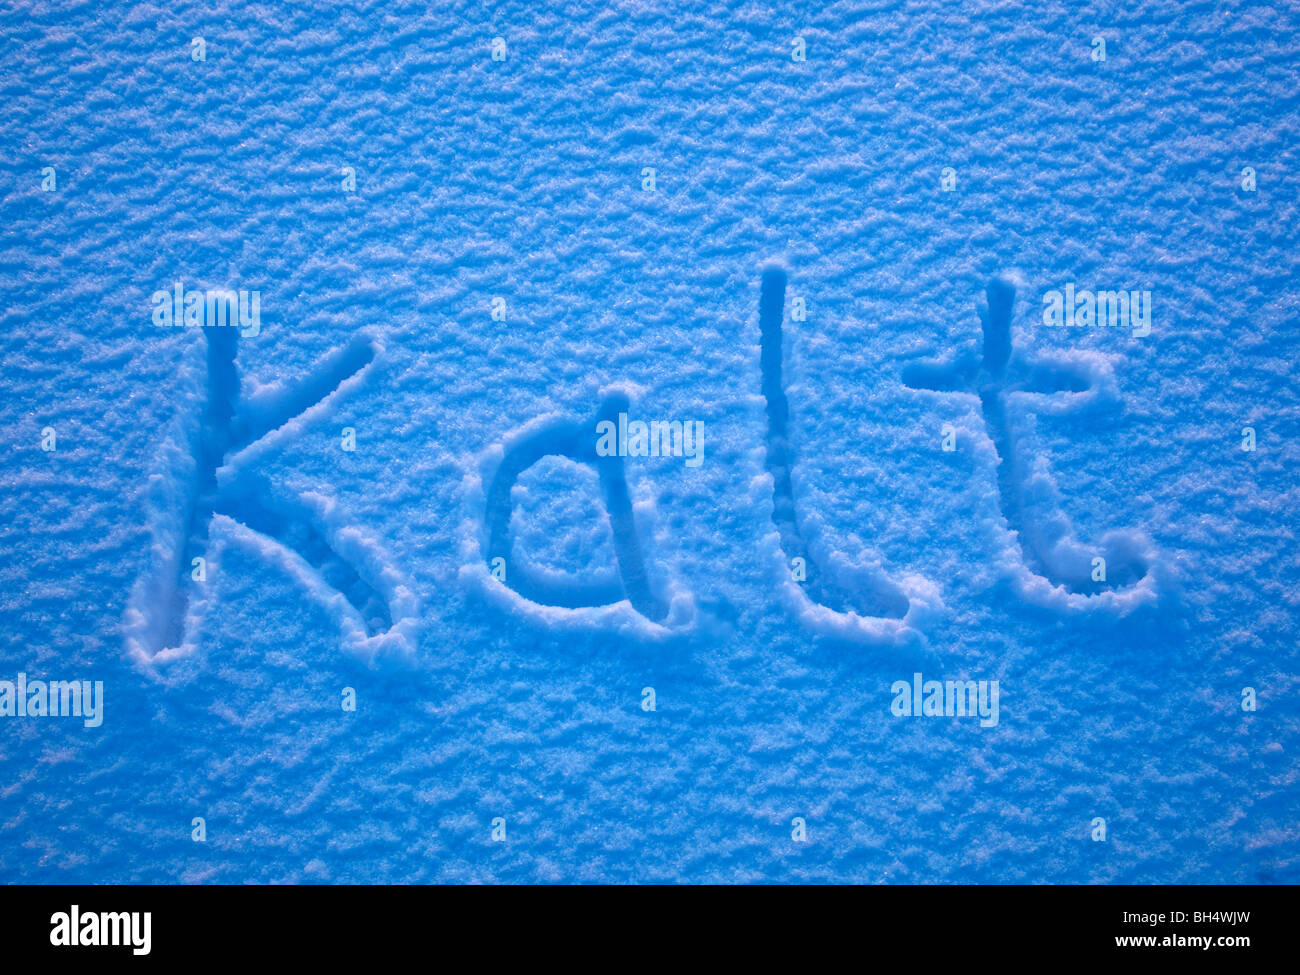 Le mot allemand pour le froid - Kalt - énoncés dans la neige. Banque D'Images